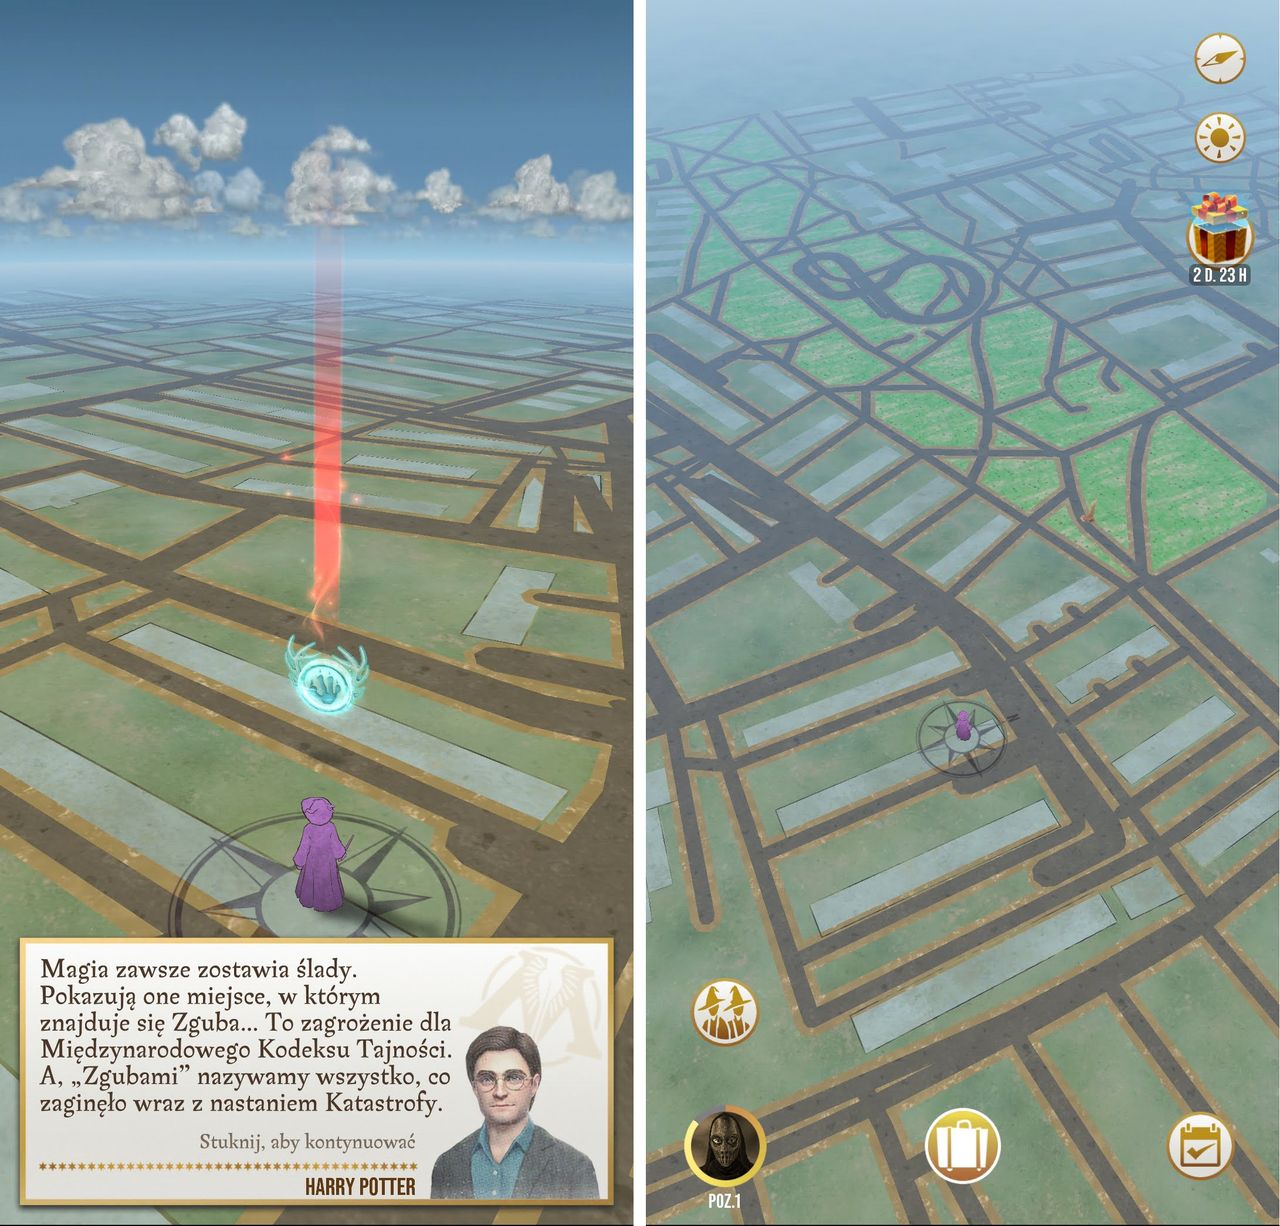 Mapa wygląda podobnie do tej w Pokemon Go, ale ma bardziej tajemniczy klimat